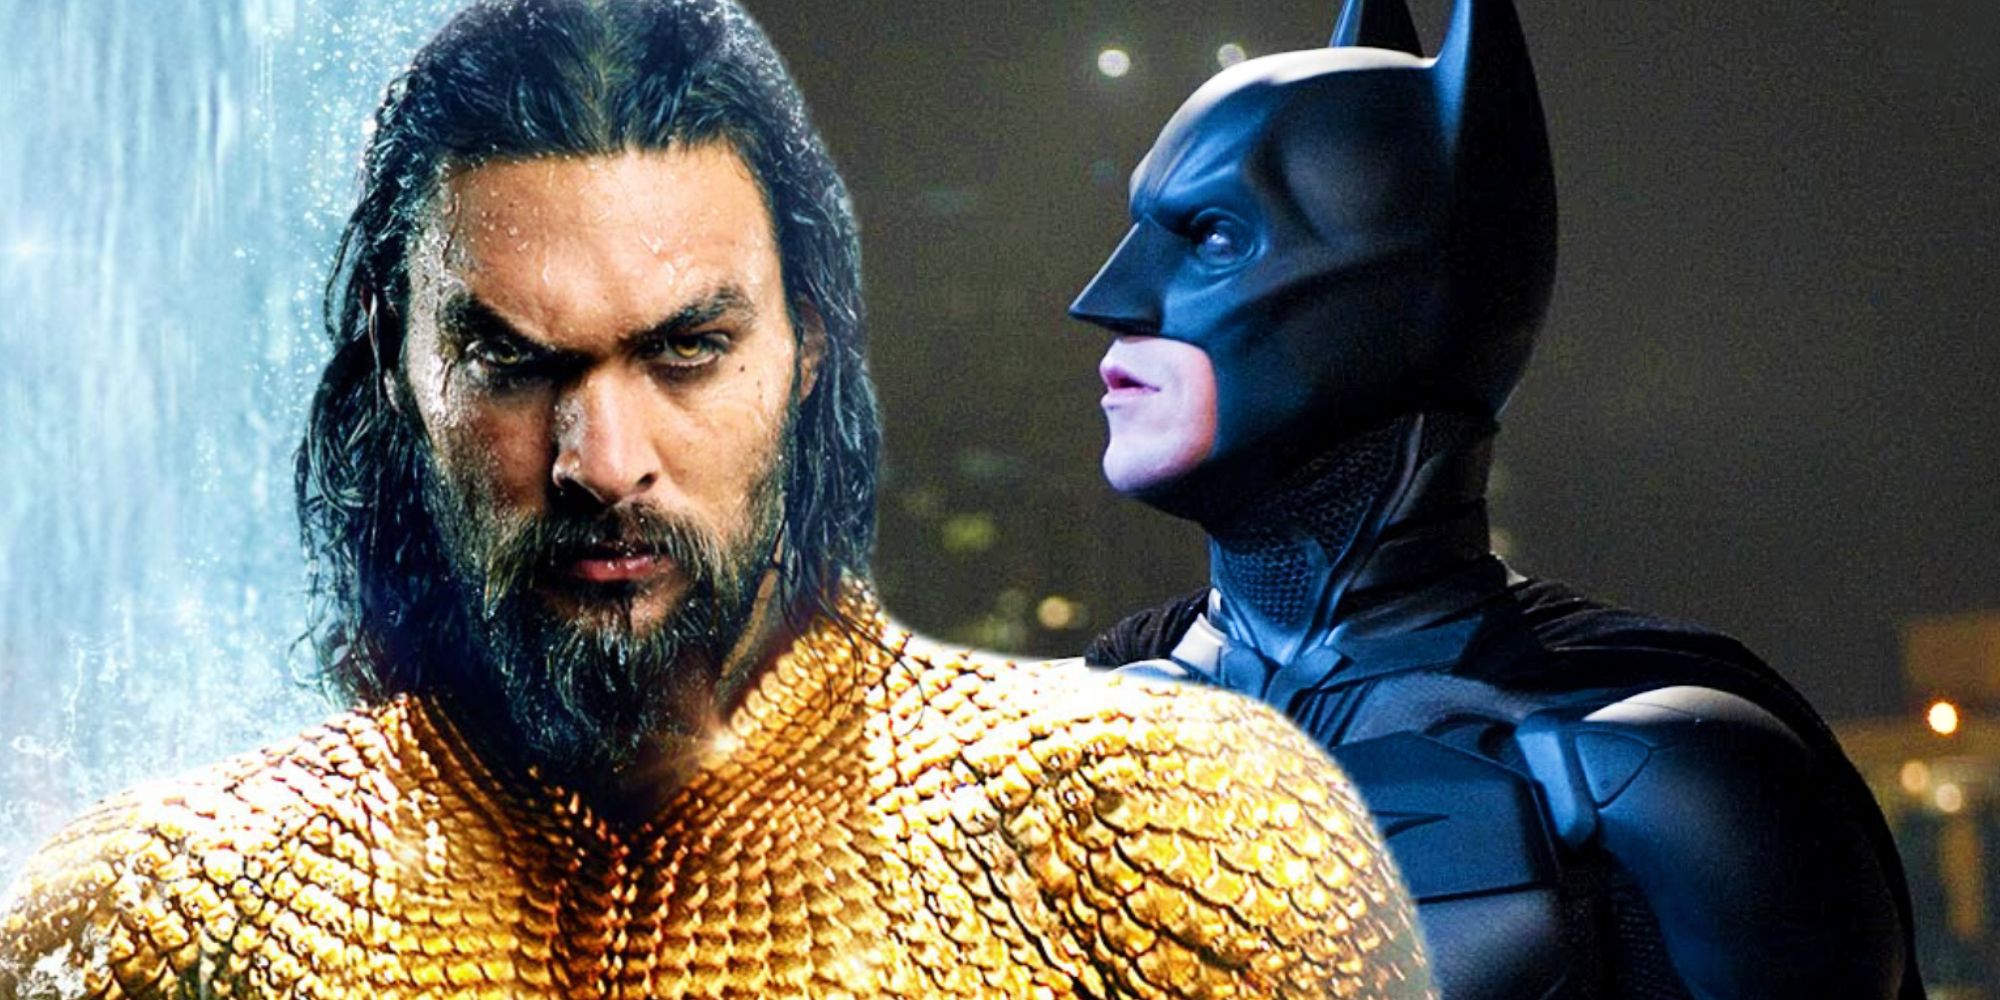 Jason Momoa as Aquaman and Christian Bale as Batman